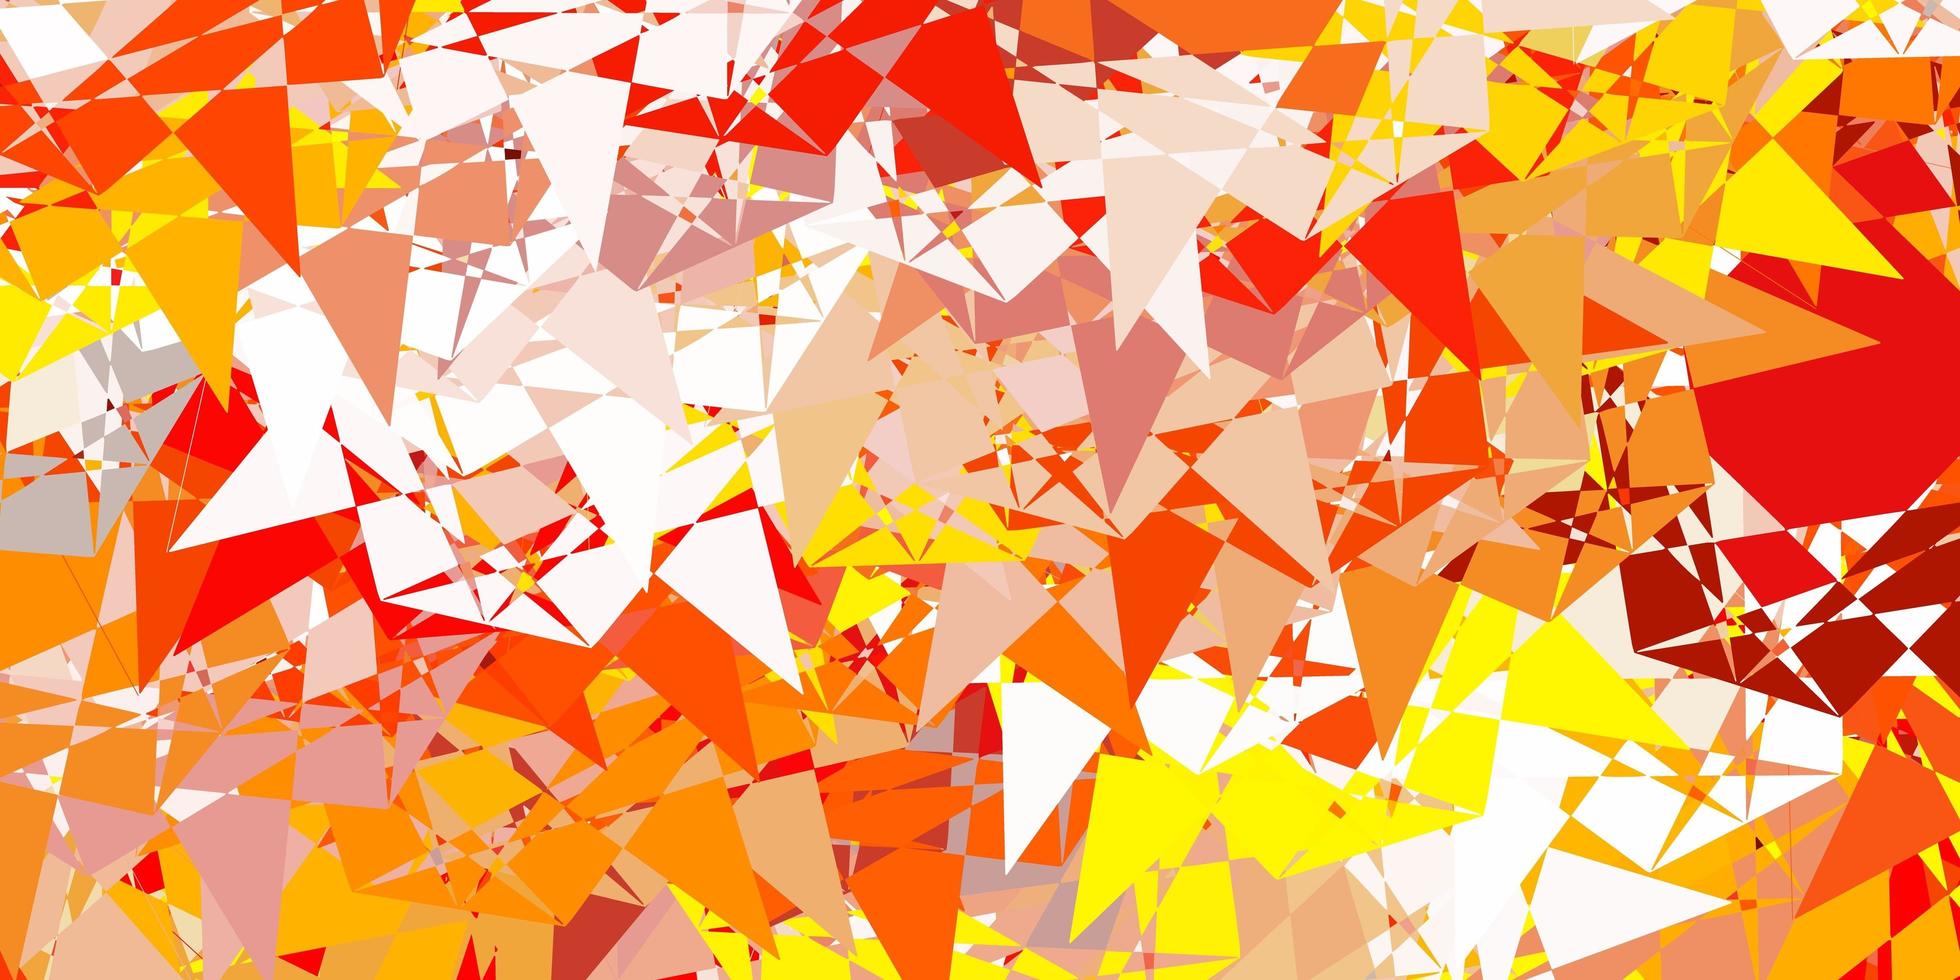 sfondo vettoriale arancione chiaro con forme poligonali.